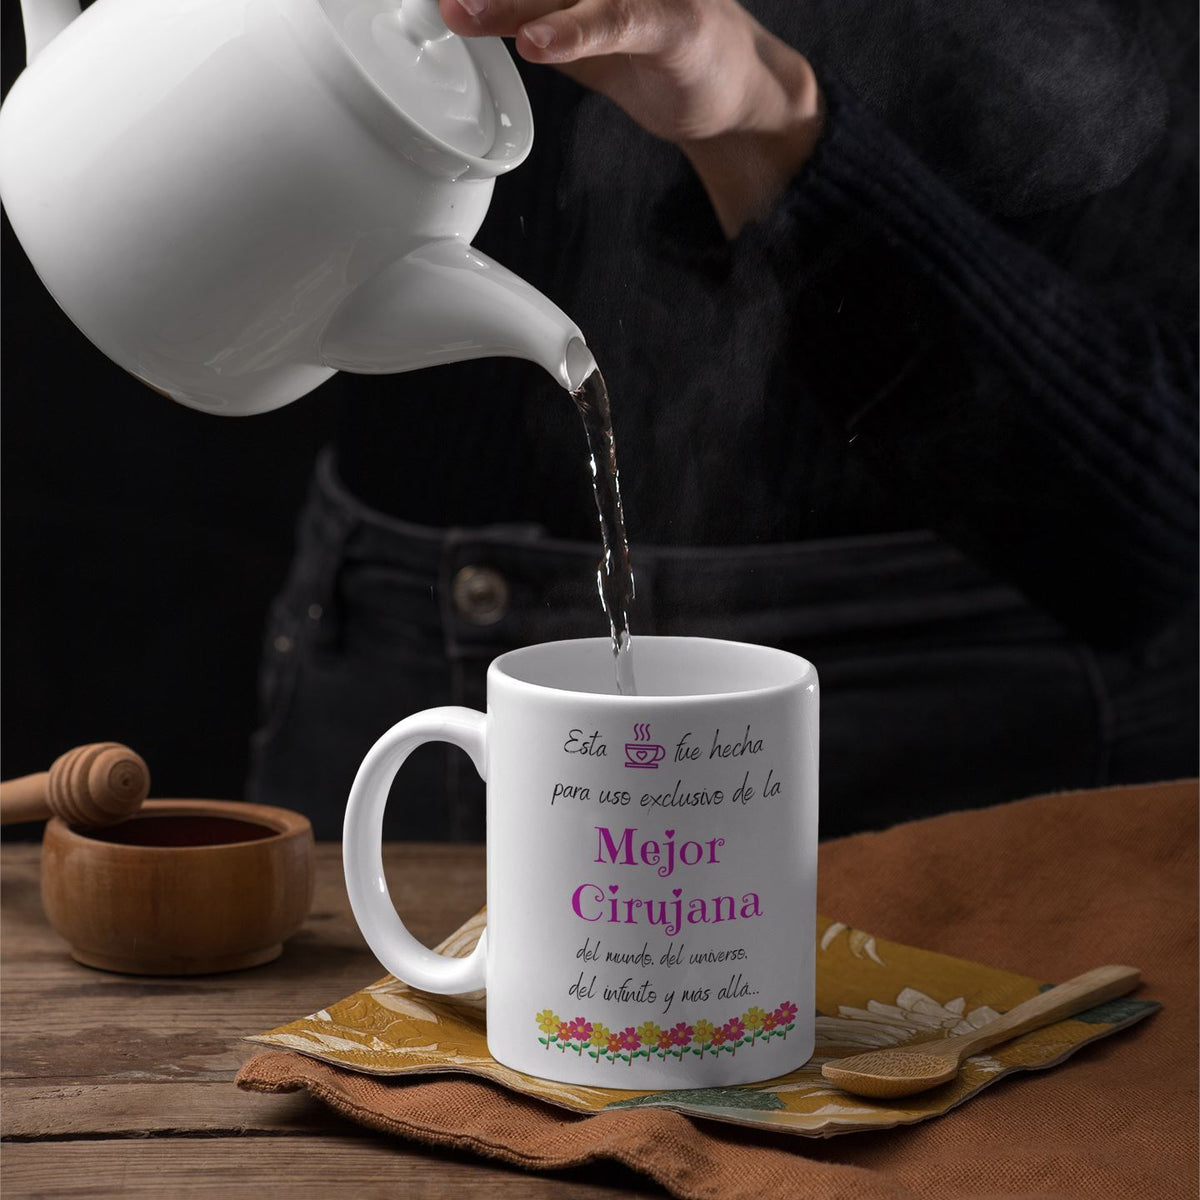 Esta taza fue hecha para uso exclusivo de la Mejor CIRUJANA del mundo...! Coffee Mug Regalos.Gifts 